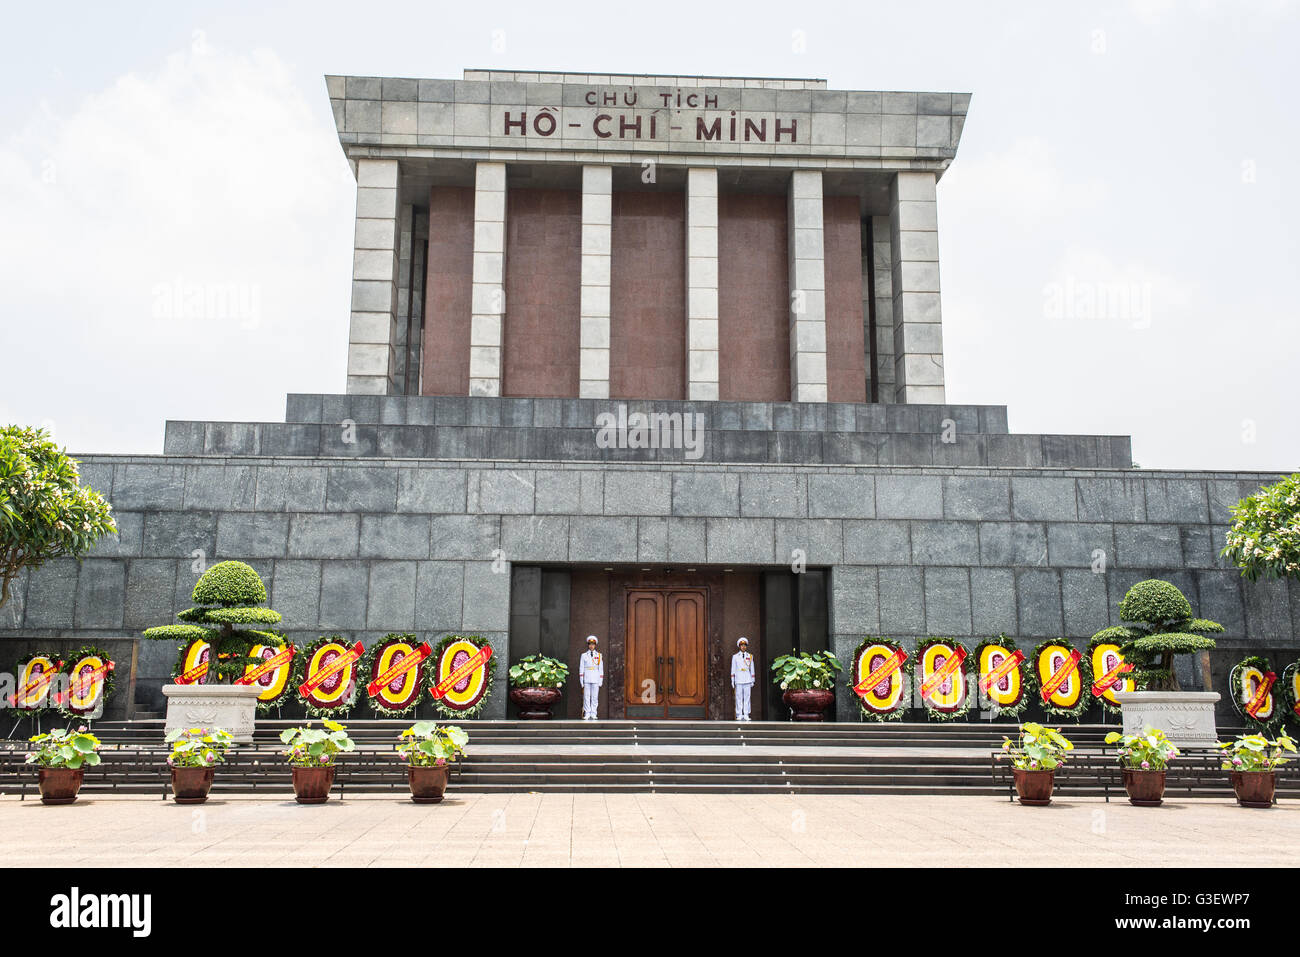 Il mausoleo di Ho chi minh in ba dinh square con le due guardie in divise bianche. Foto Stock